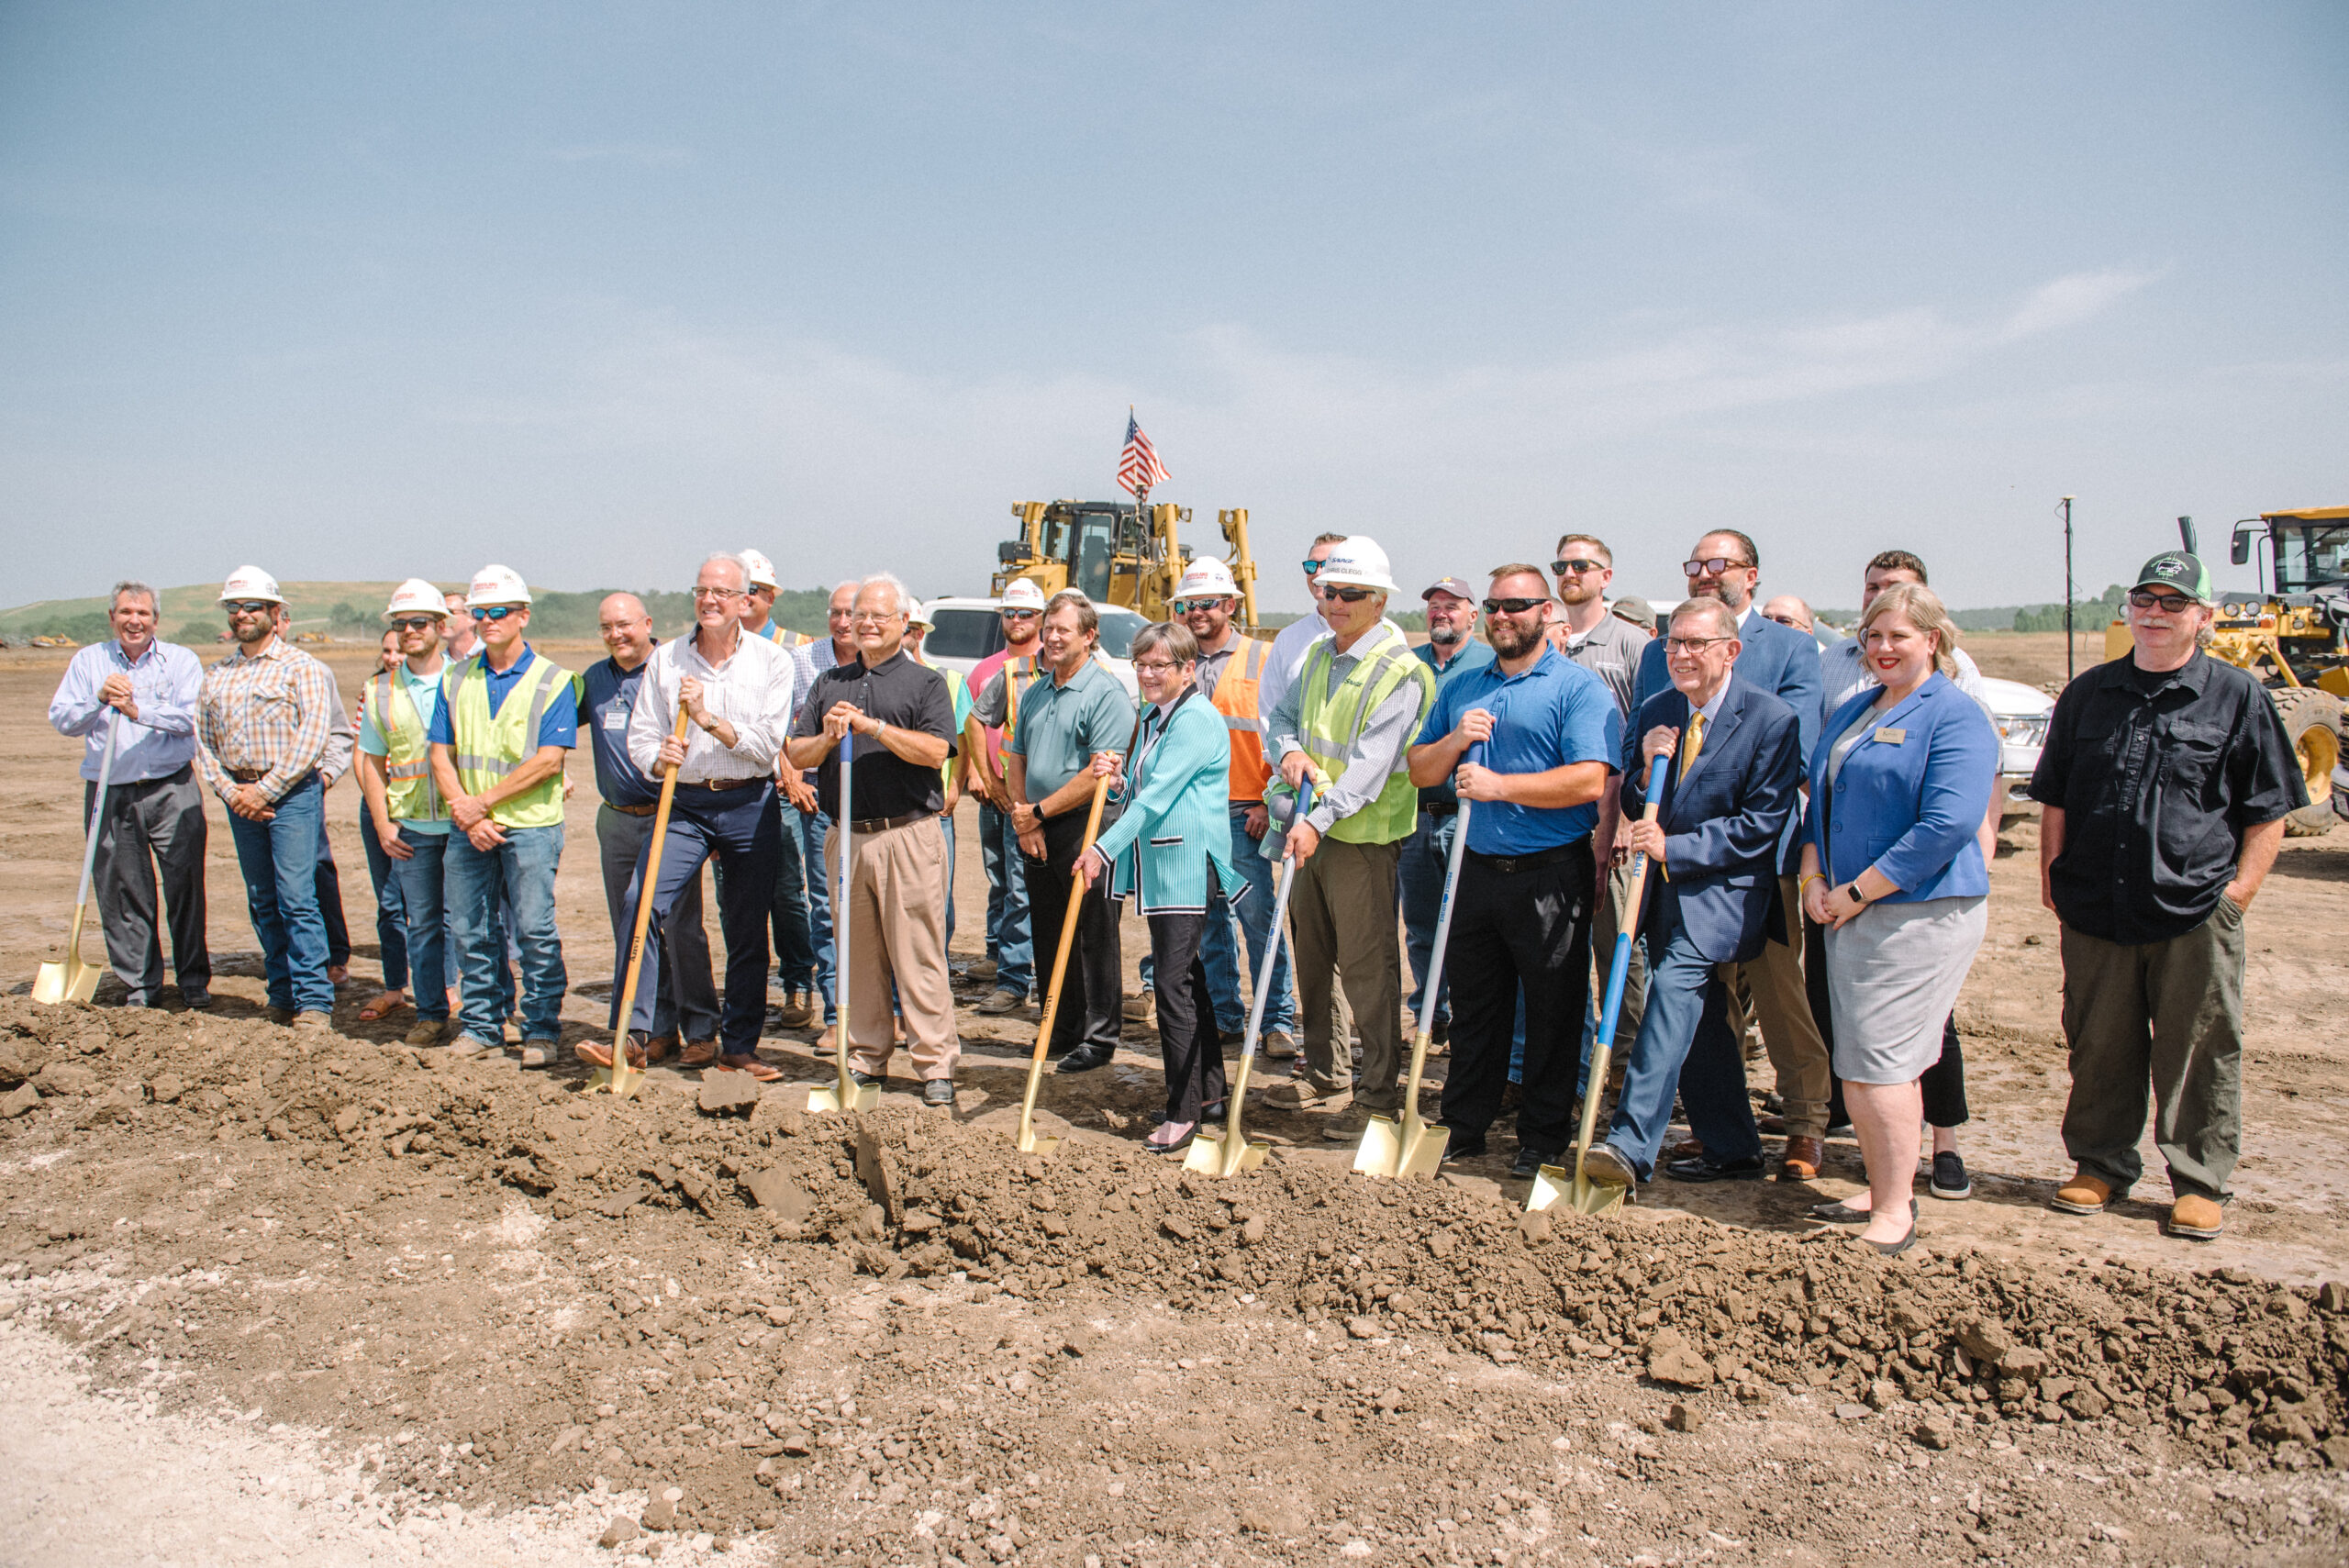 Funcionarios estatales y locales apoyan el inicio de la construcción de la planta de trituración de soja de Bartlett en el sureste de Kansas, valorada en 375 millones de dólares